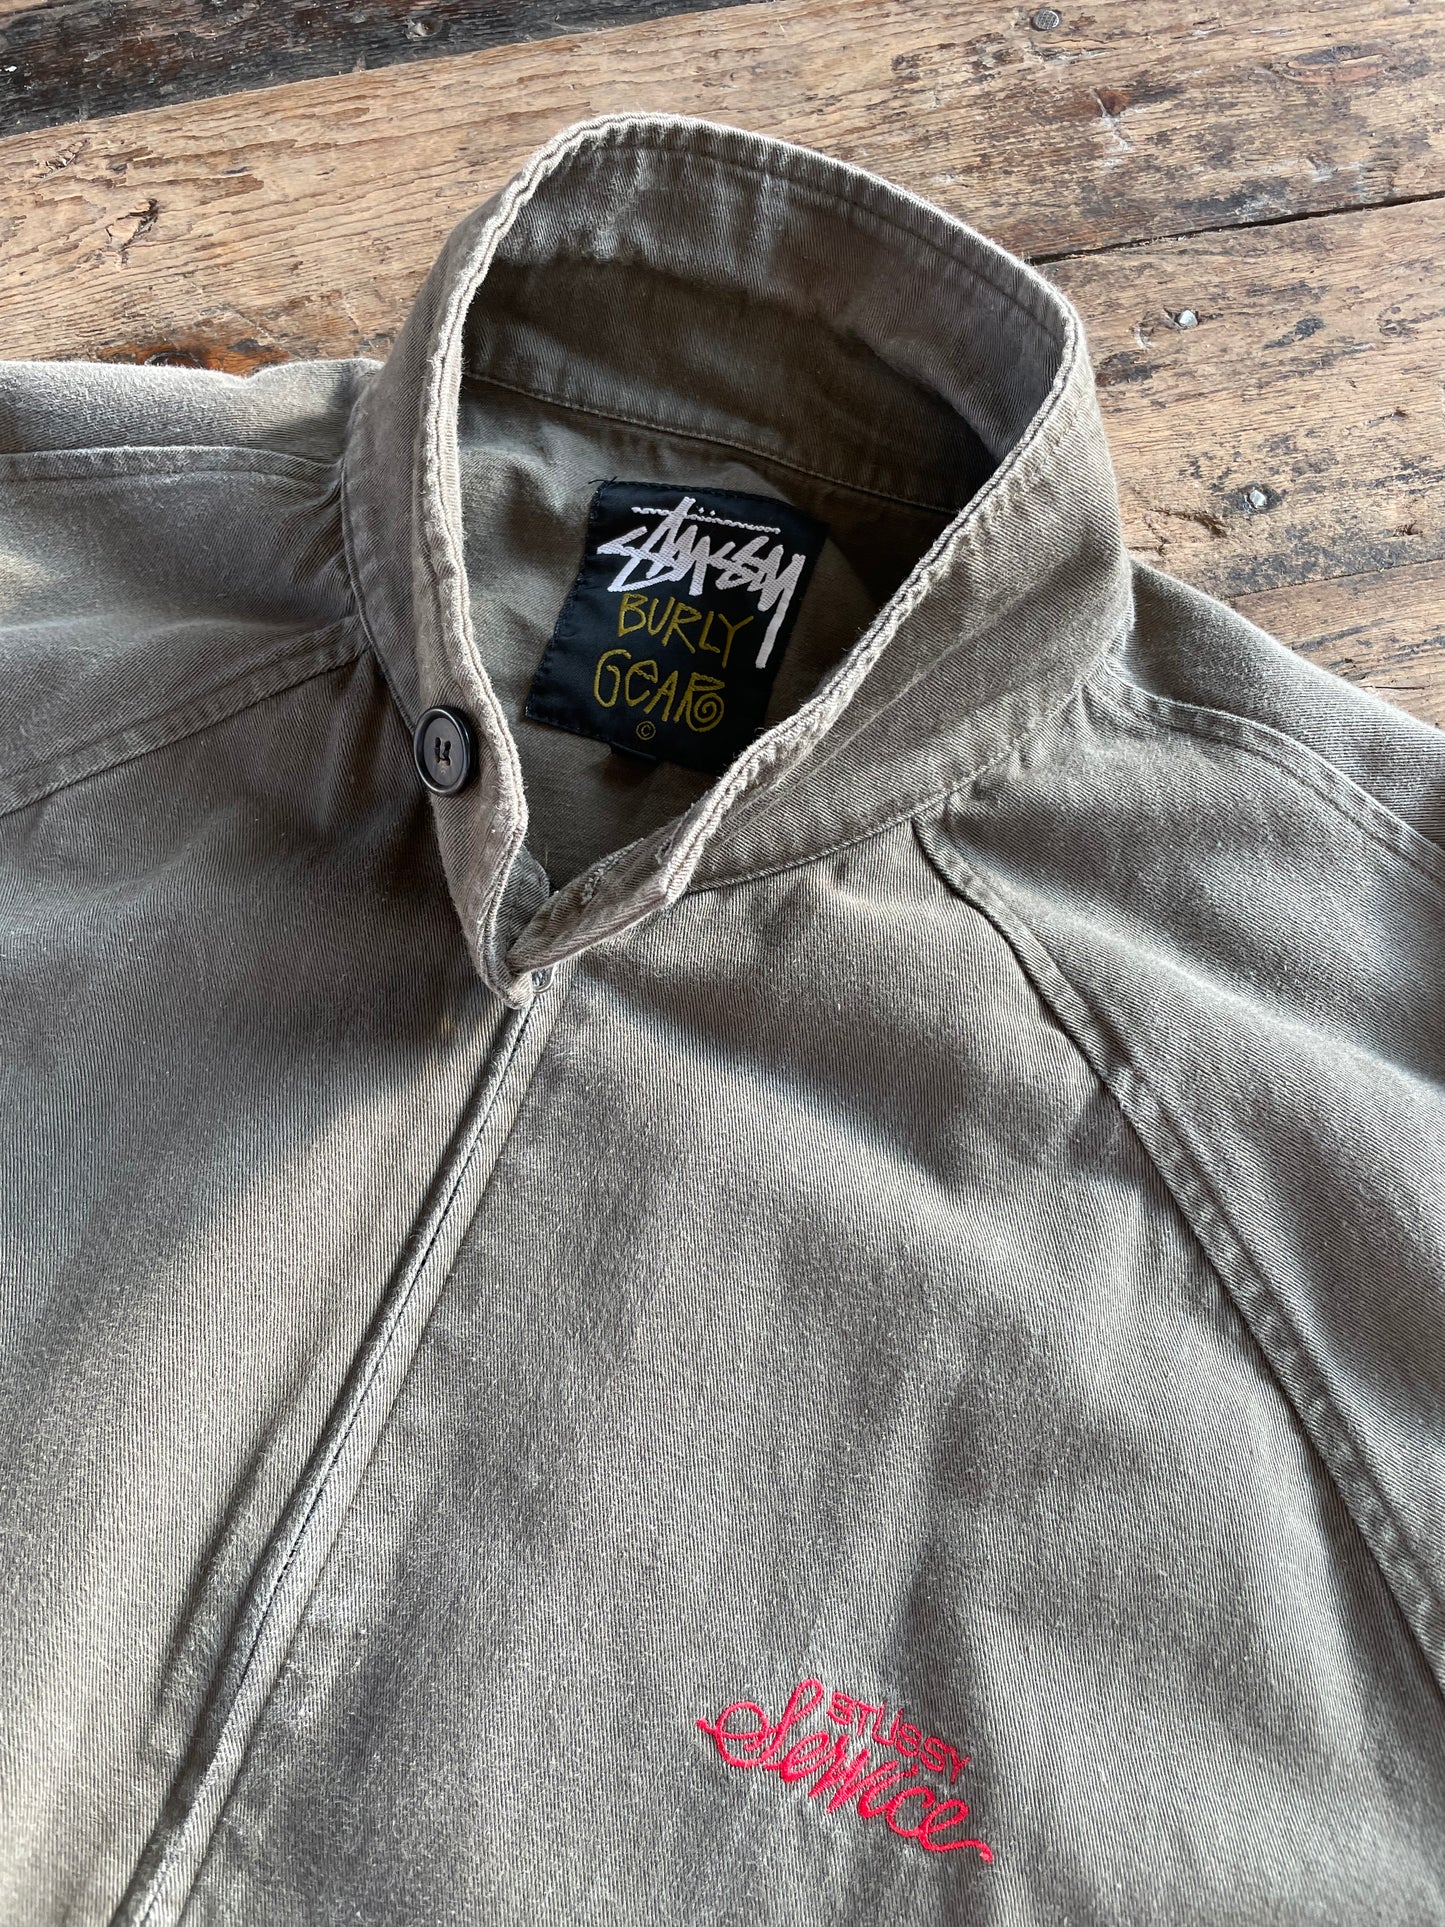 90s Stüssy Burly Gear Harrington jacket (L)